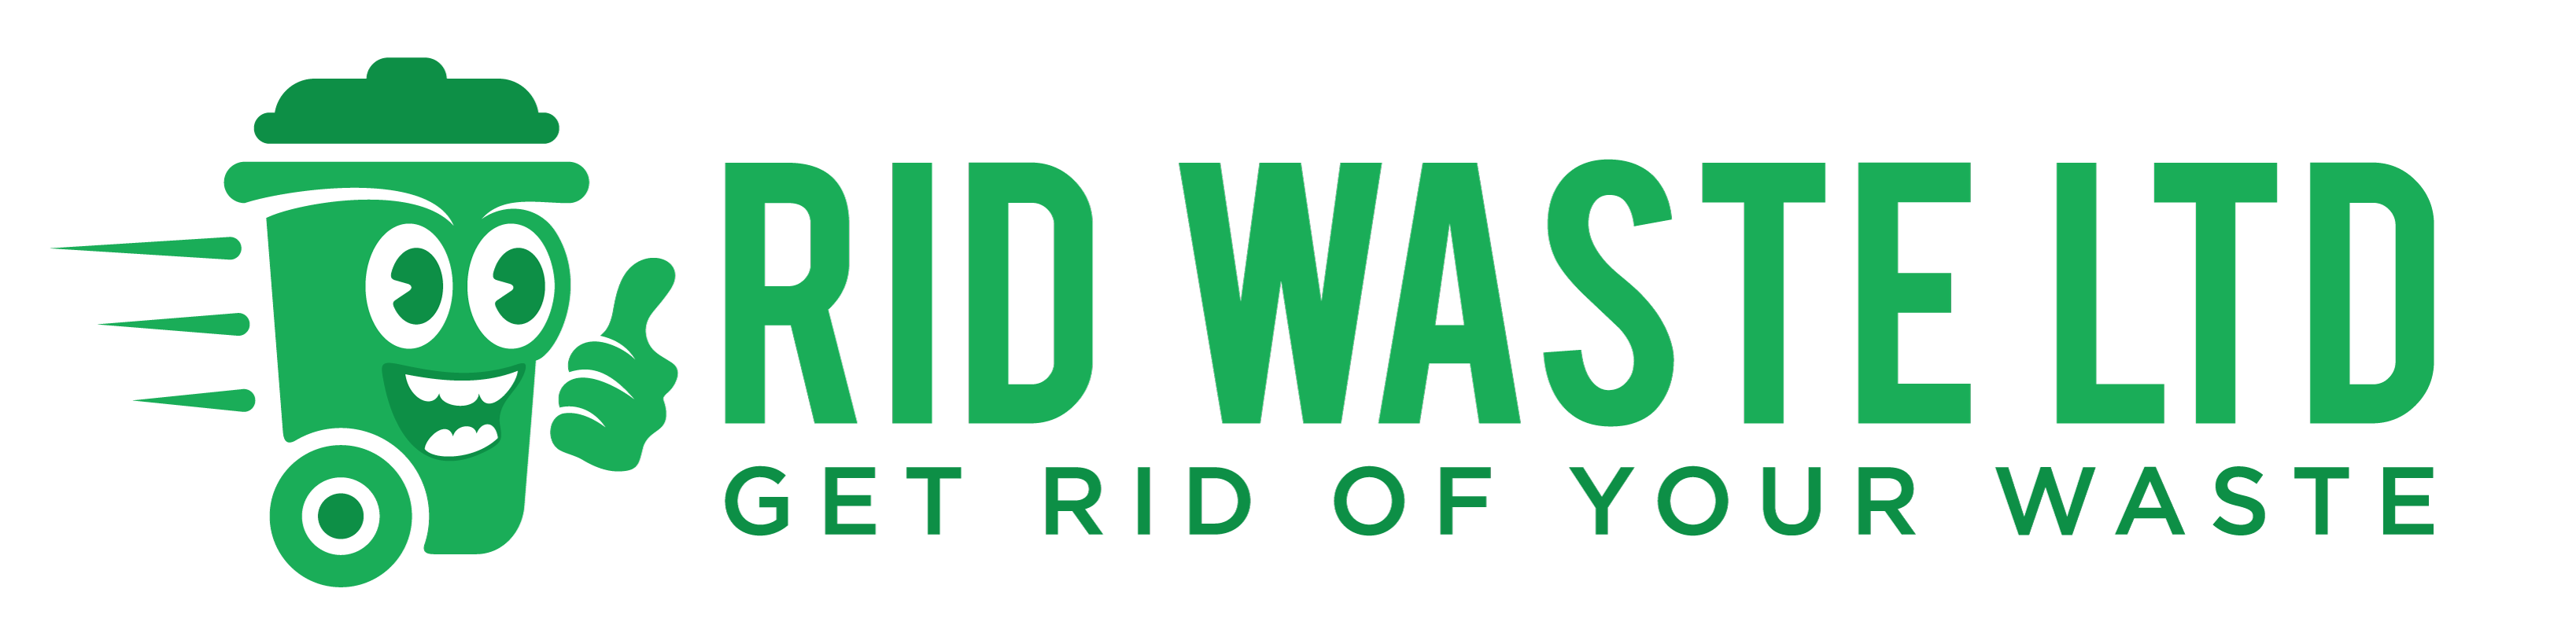 RID WASTE Ltd